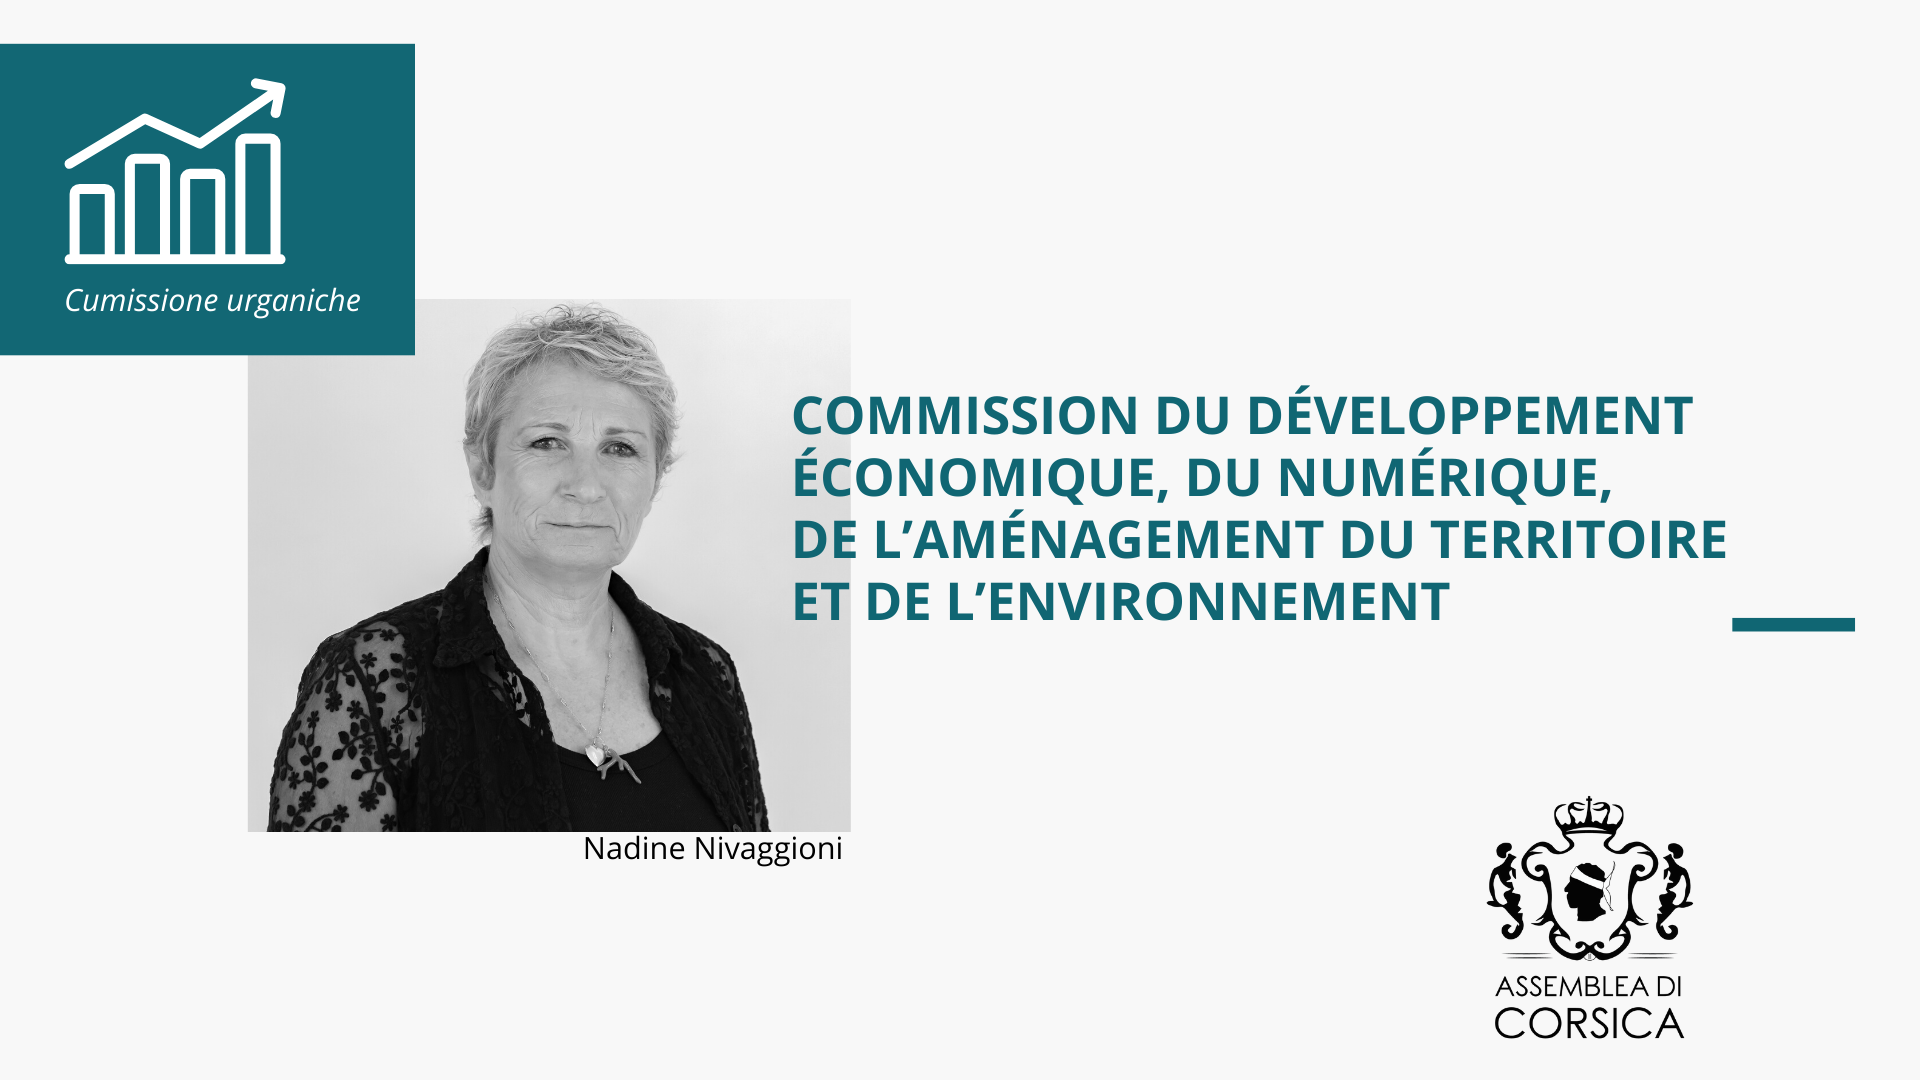 La Commission du développement économique, du numérique, de l'aménagement du territoire et de l'environnement